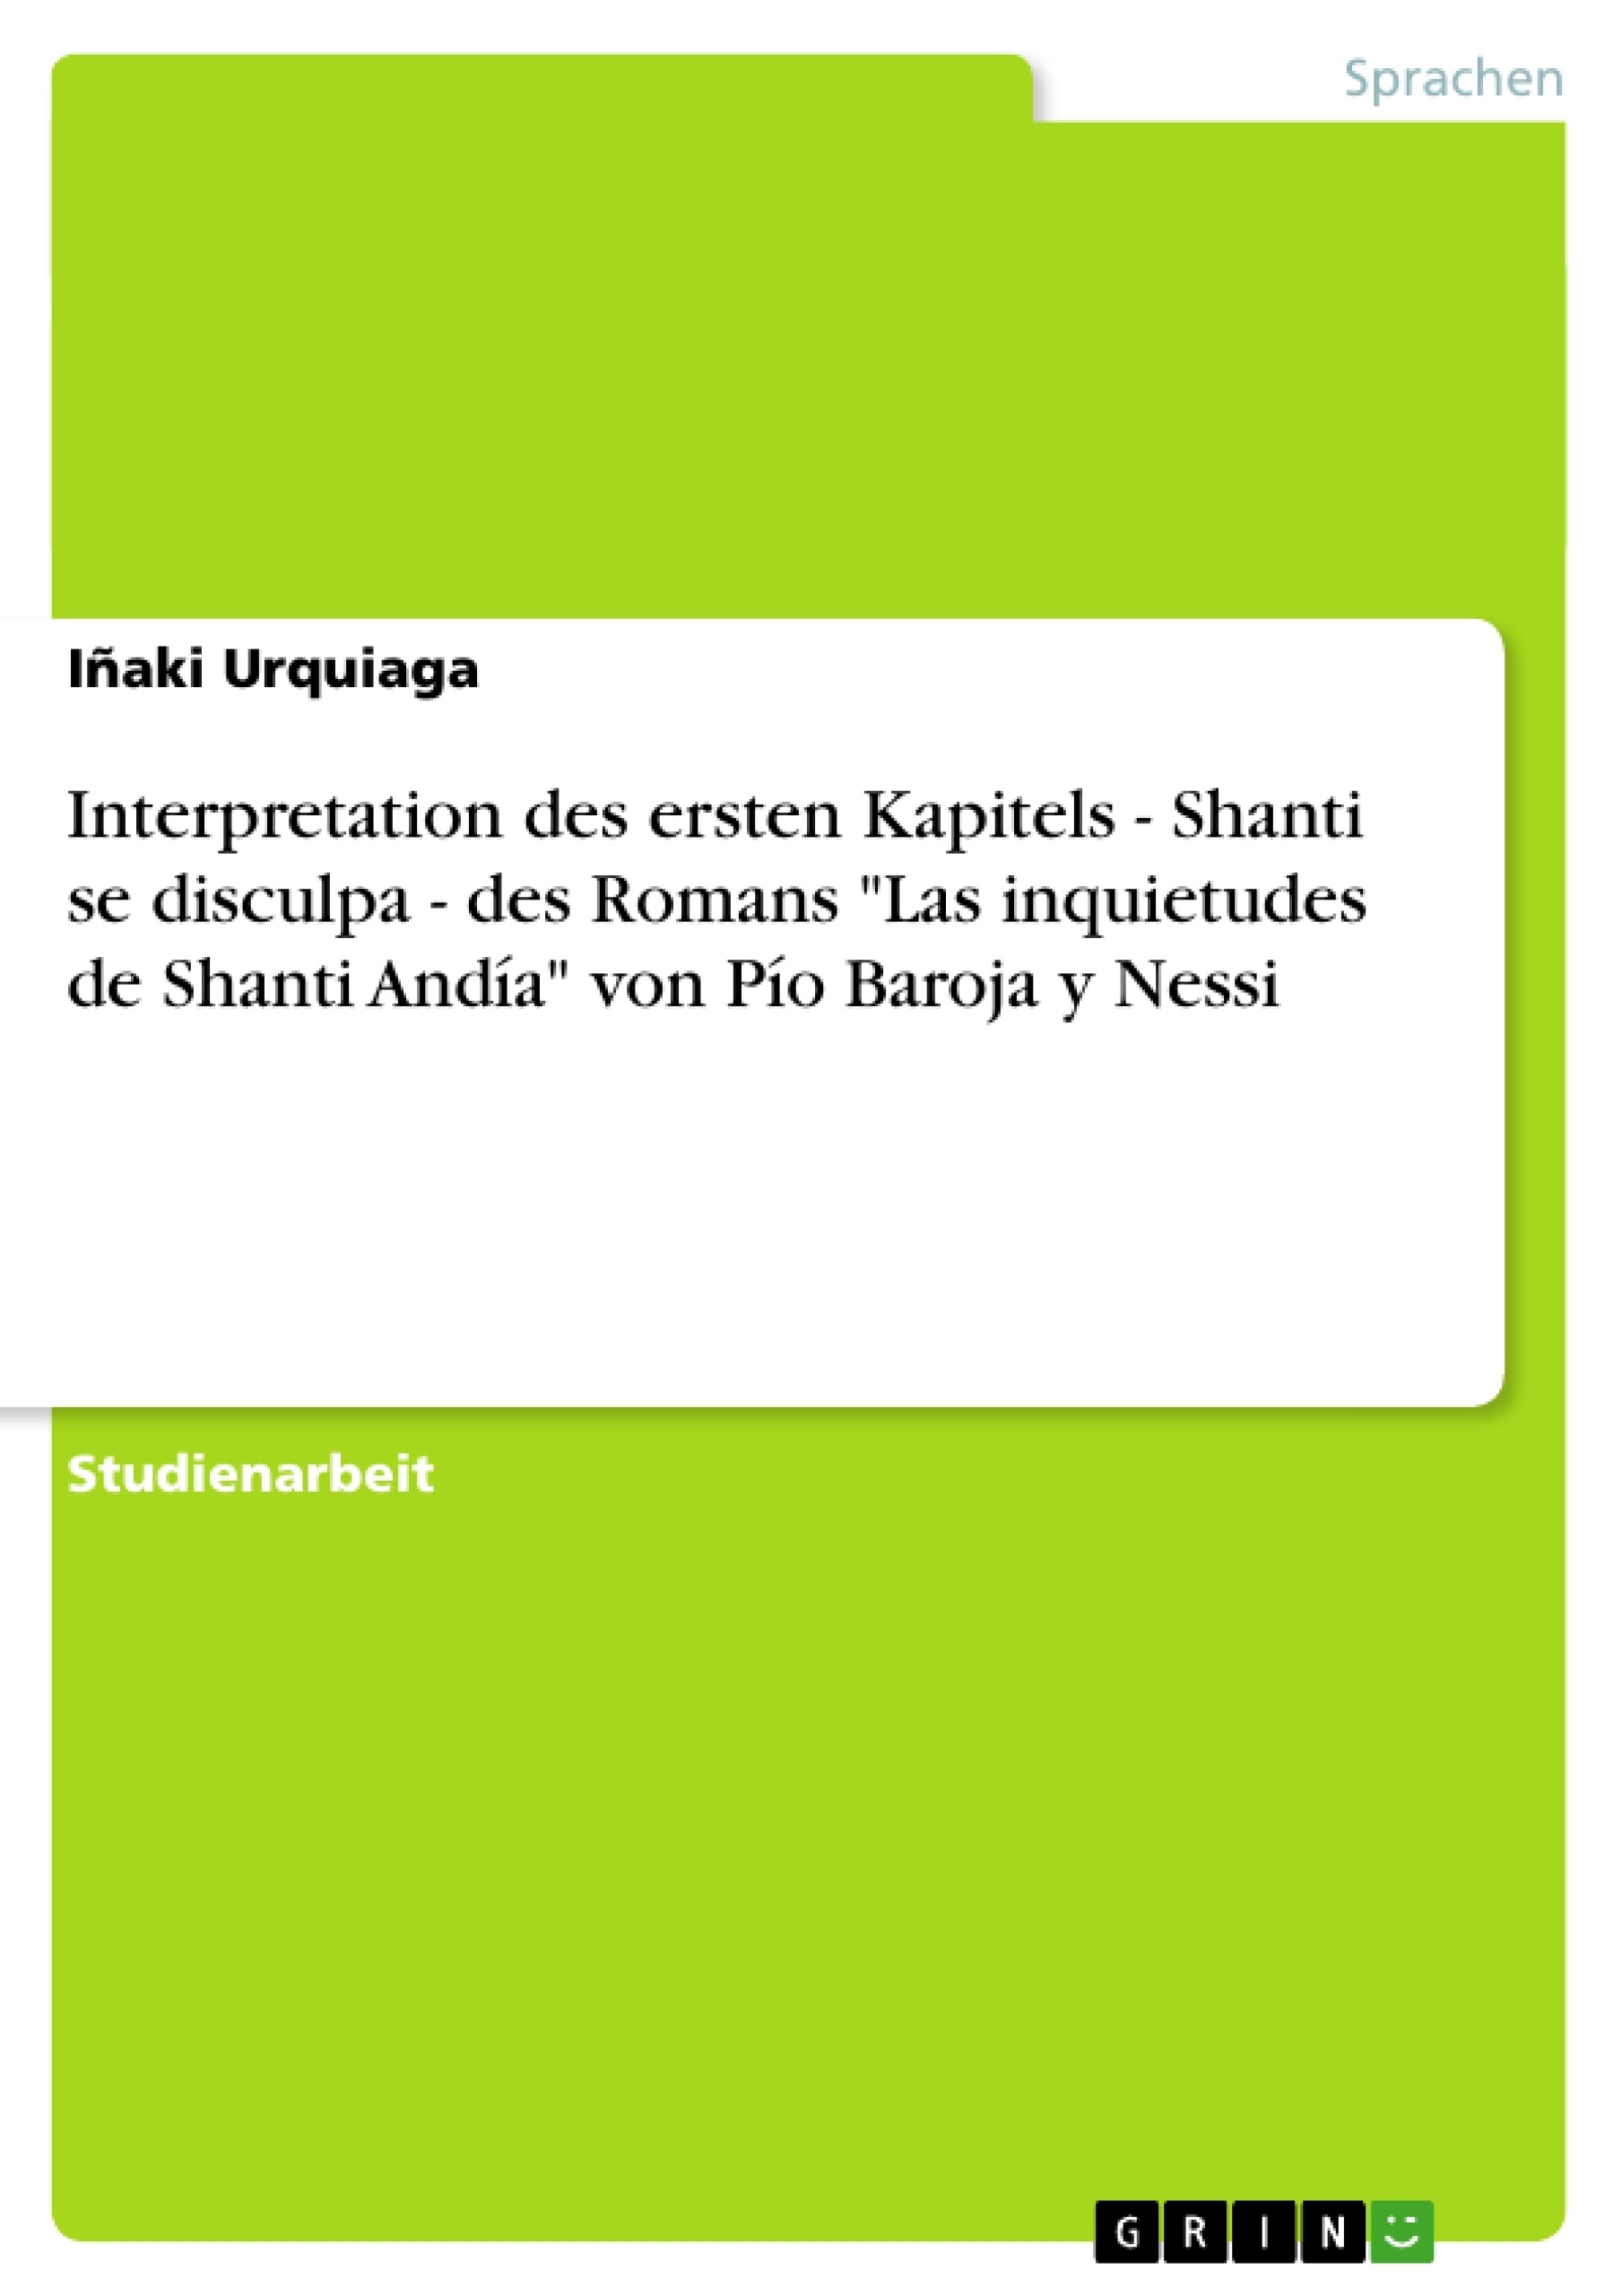 Title: Interpretation des ersten Kapitels - Shanti se disculpa - des Romans "Las inquietudes de Shanti Andía" von Pío Baroja y Nessi